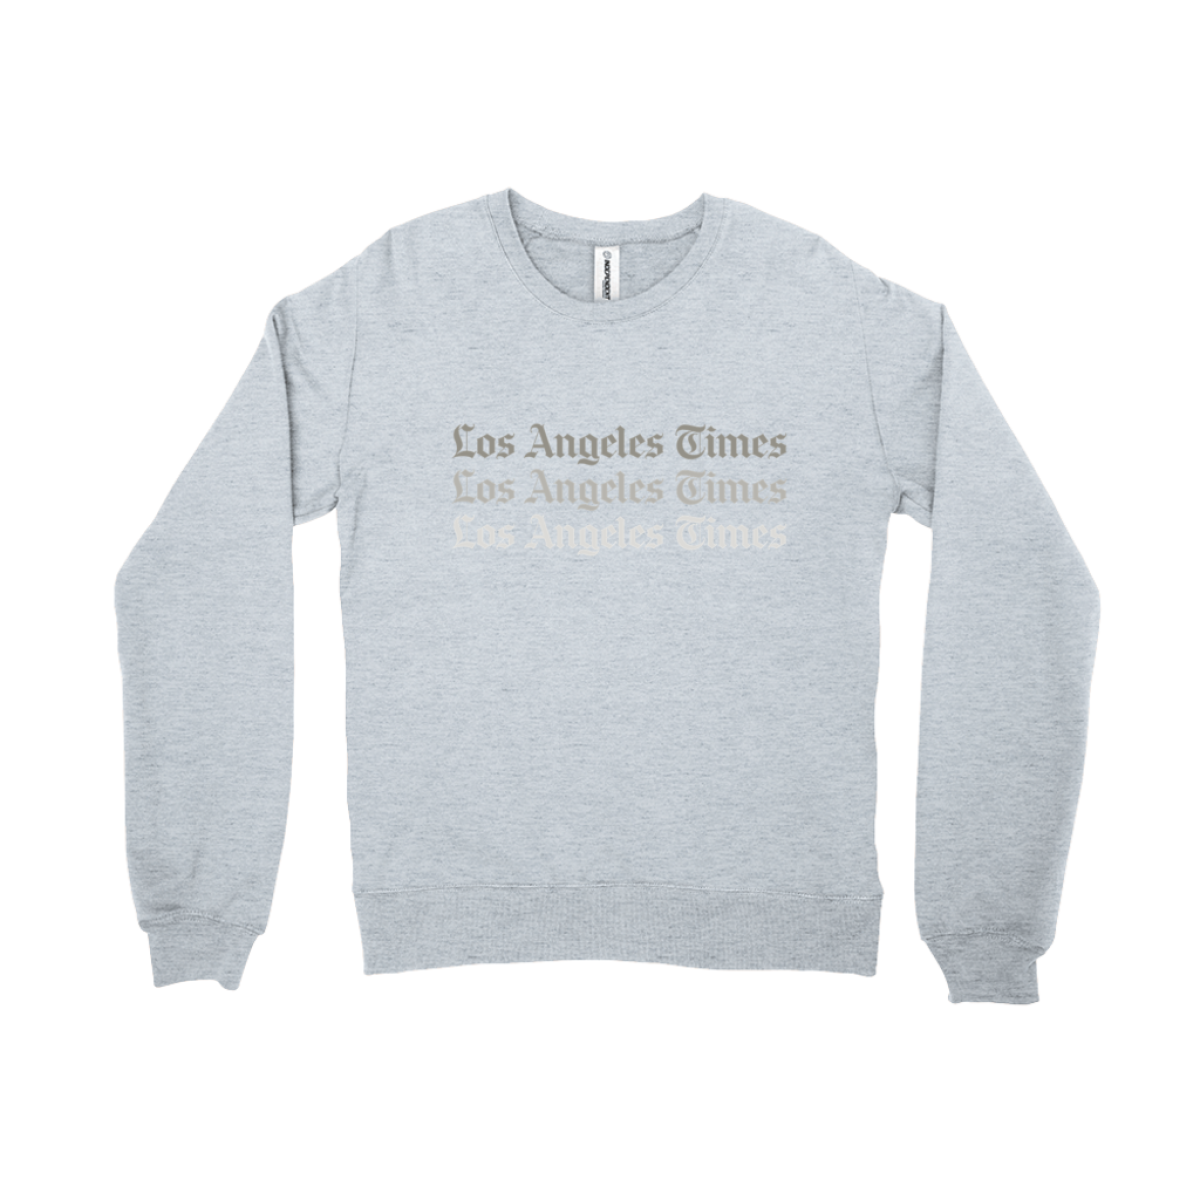 Los Angeles Times gray crewneck.